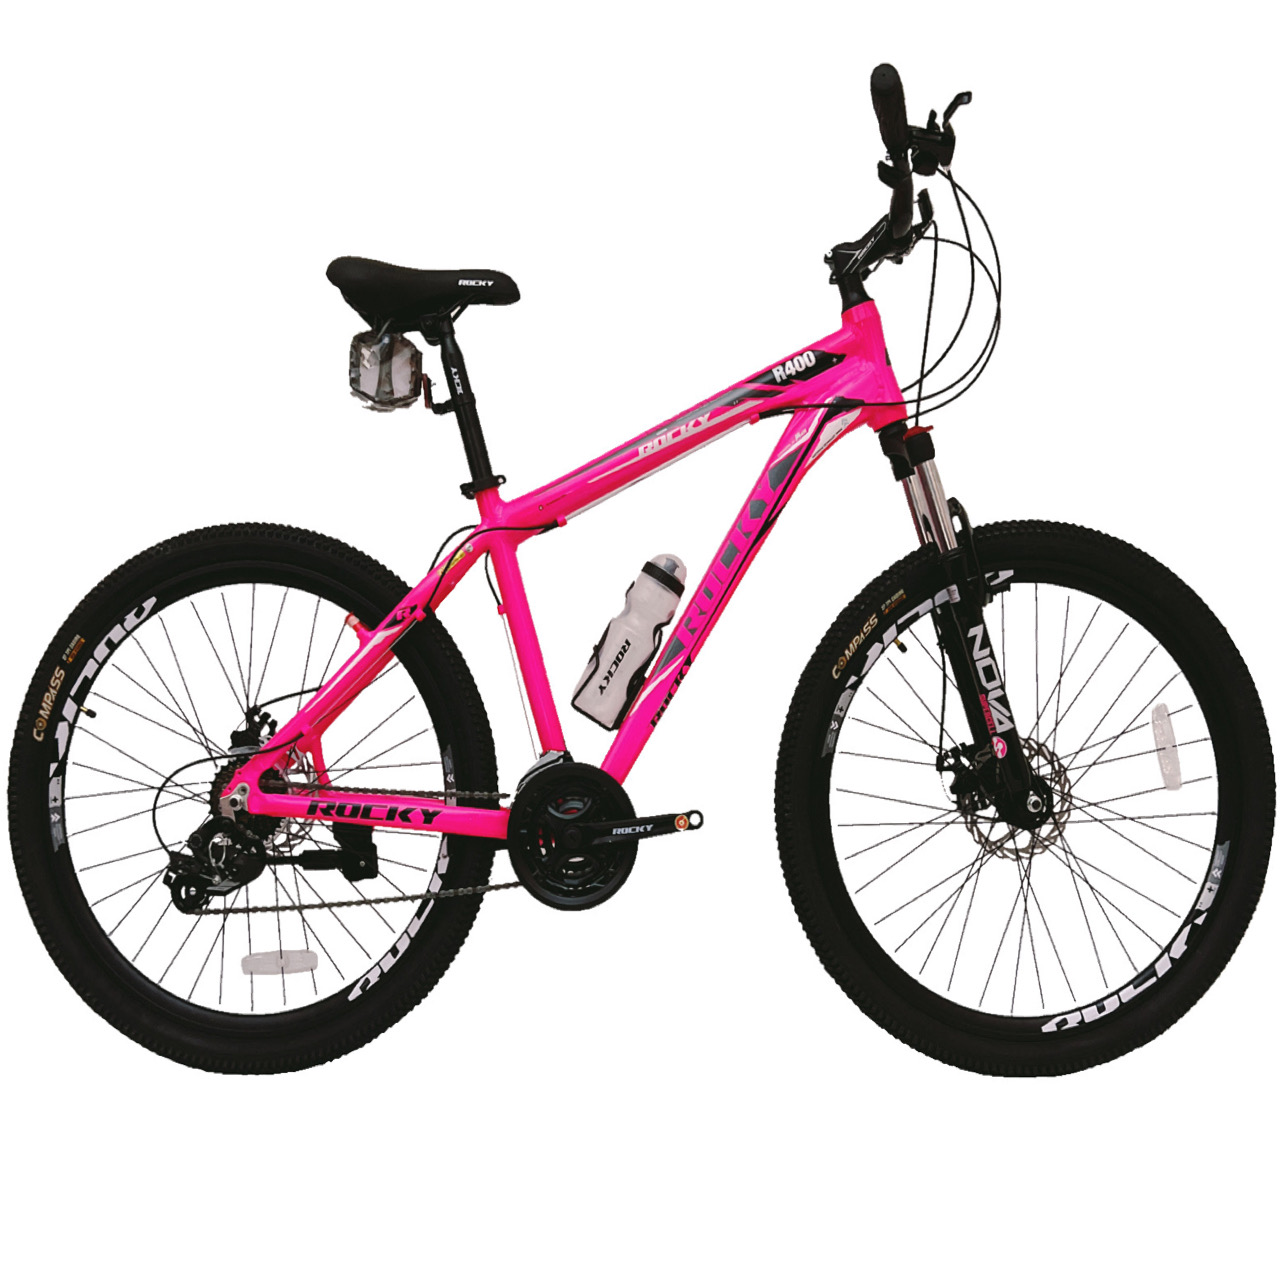 نکته خرید - قیمت روز دوچرخه کوهستان راکی مدل R400 کد دیسکی سایز 27.5 خرید